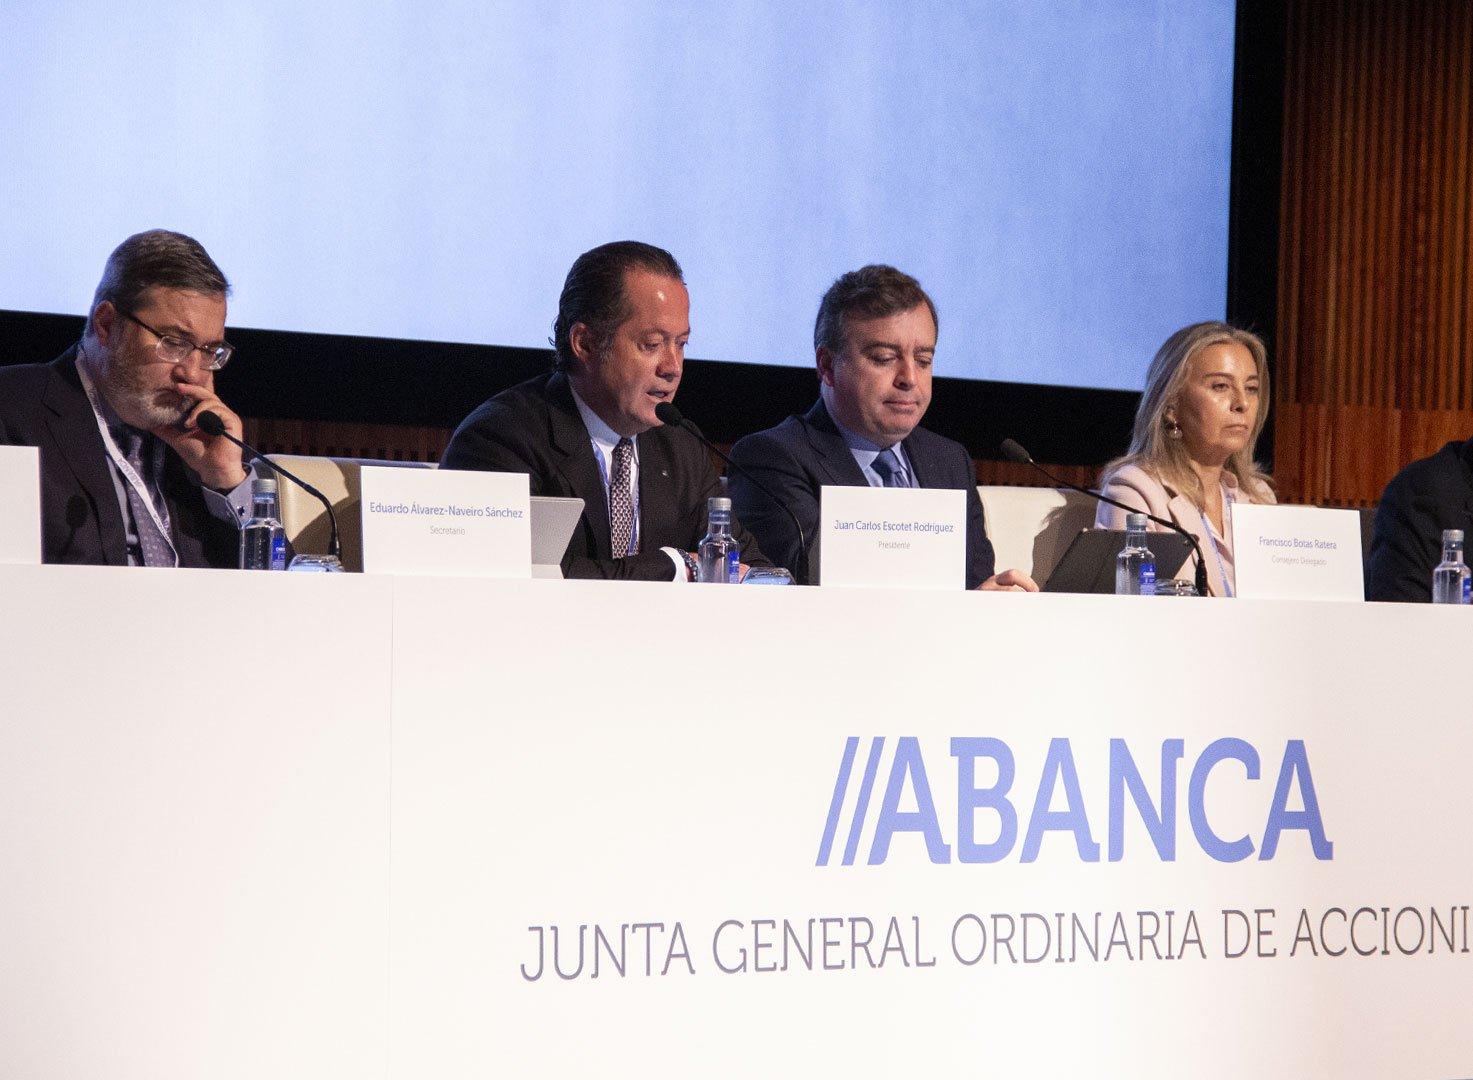 Juan Carlos Escotet Rodríguez y Francisco Botas, en el centro, durante la reunión (ABANCA)